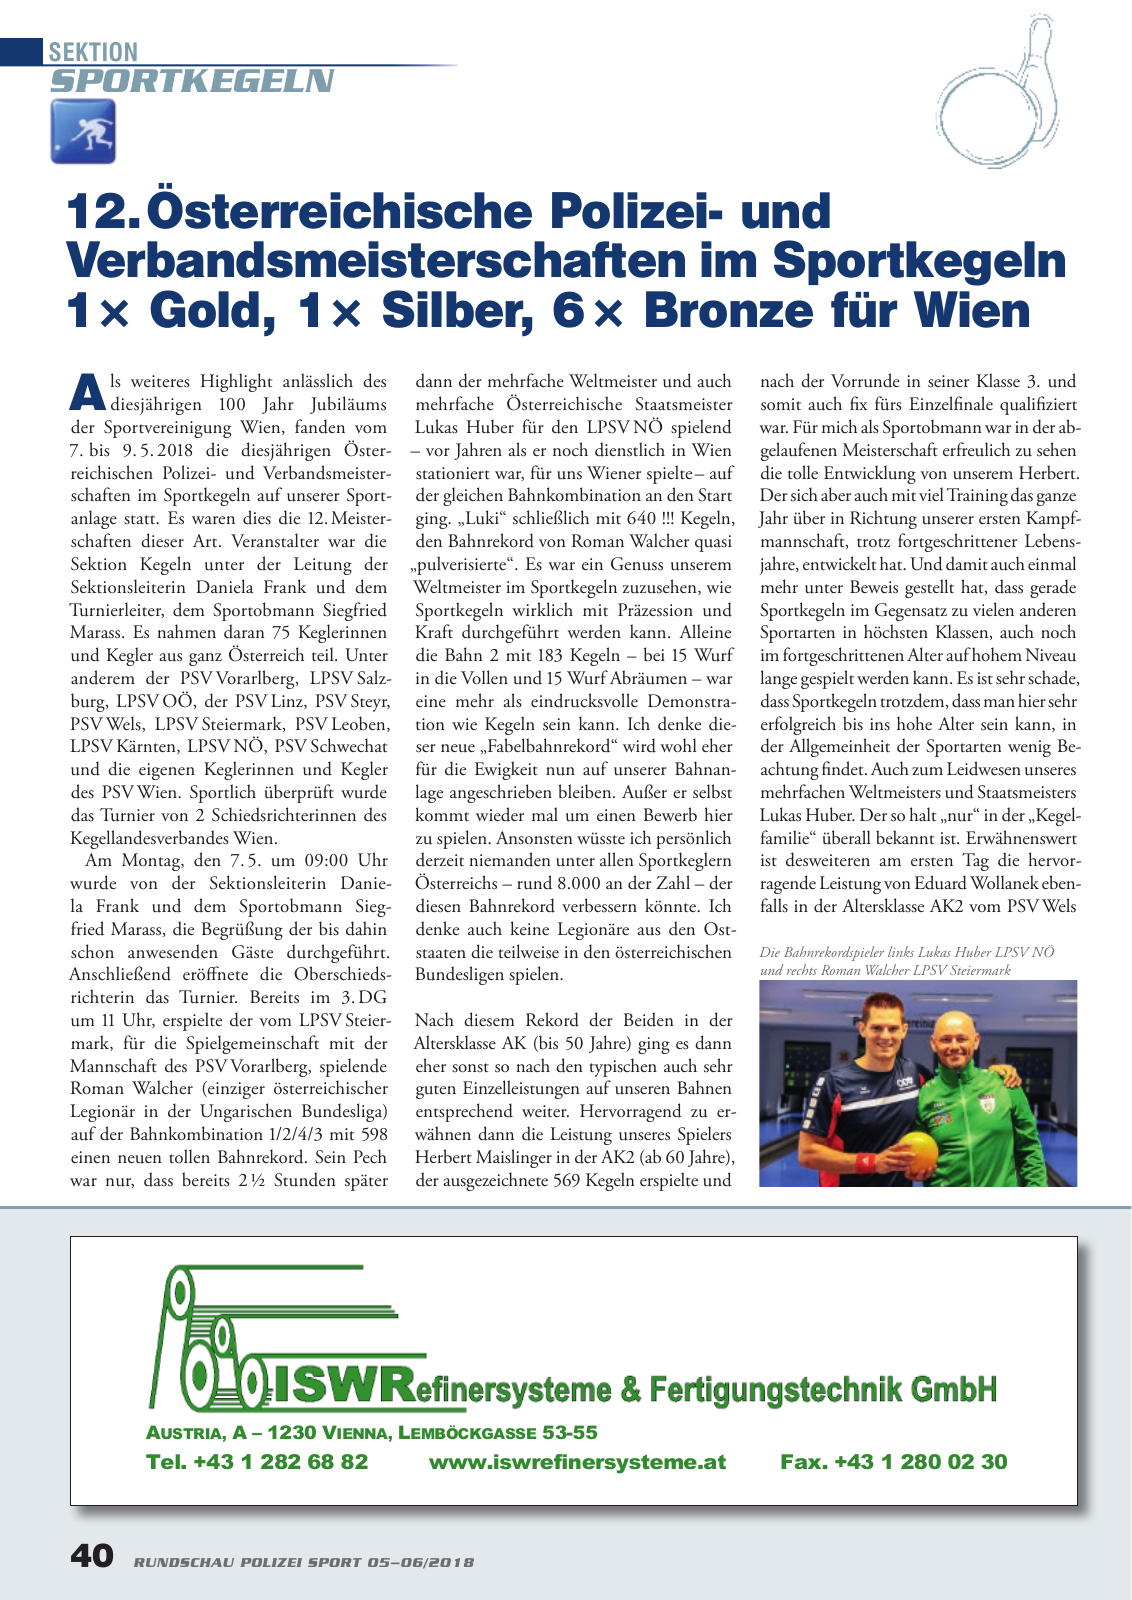 Vorschau Rundschau Polizei Sport 05-06/2018 Seite 40